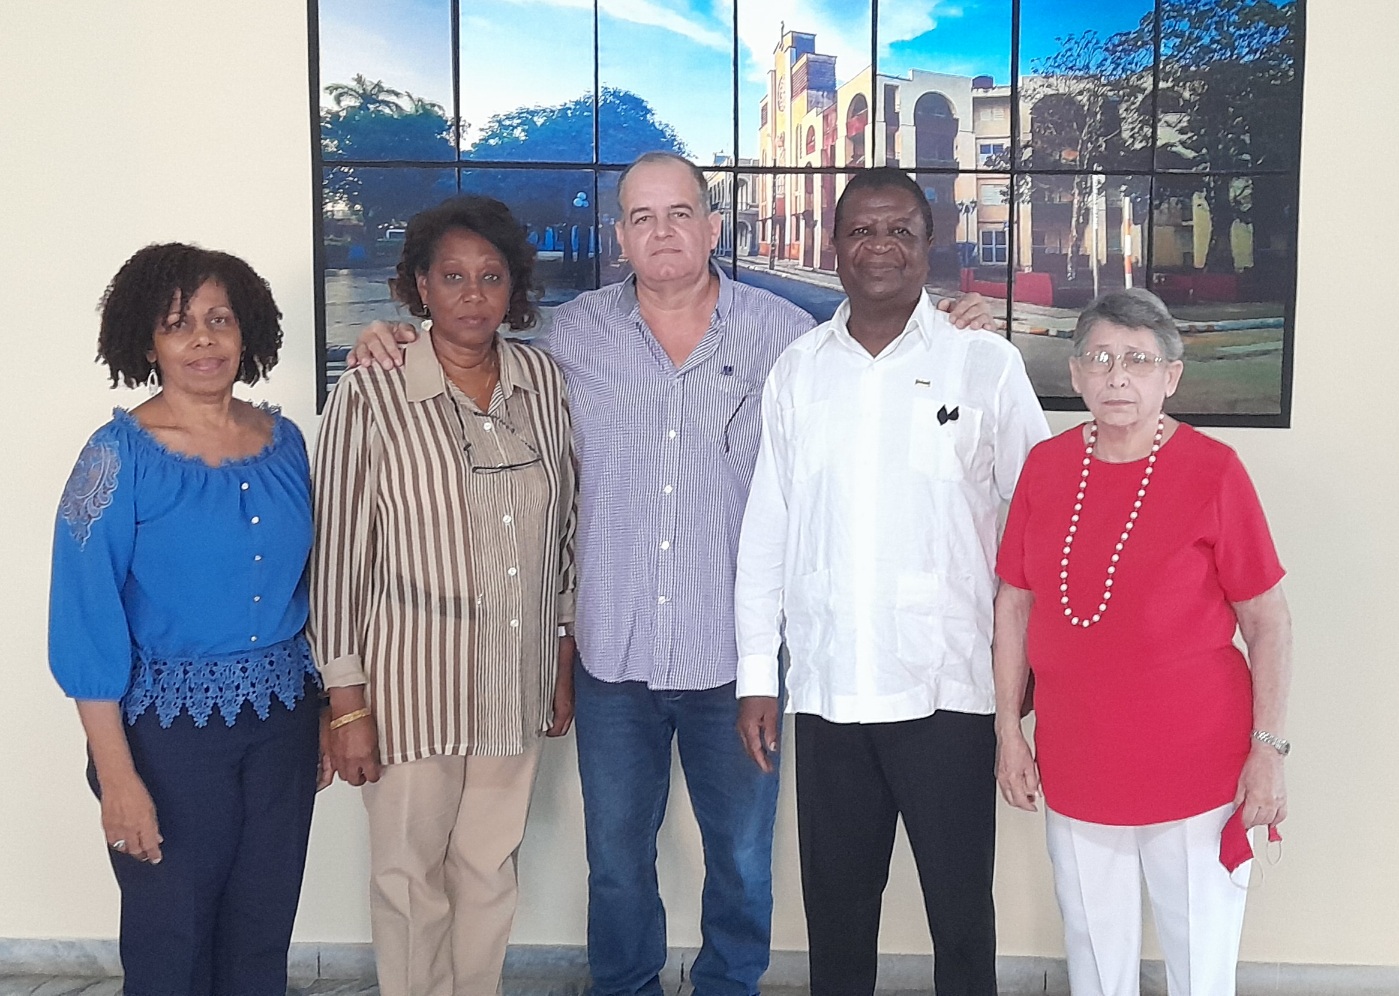 visita del excelentísimo Señor Eliseu Joaquín Machava Embajador Extraordinario y Plenipotenciario de la República de Mozambique en Cuba 2